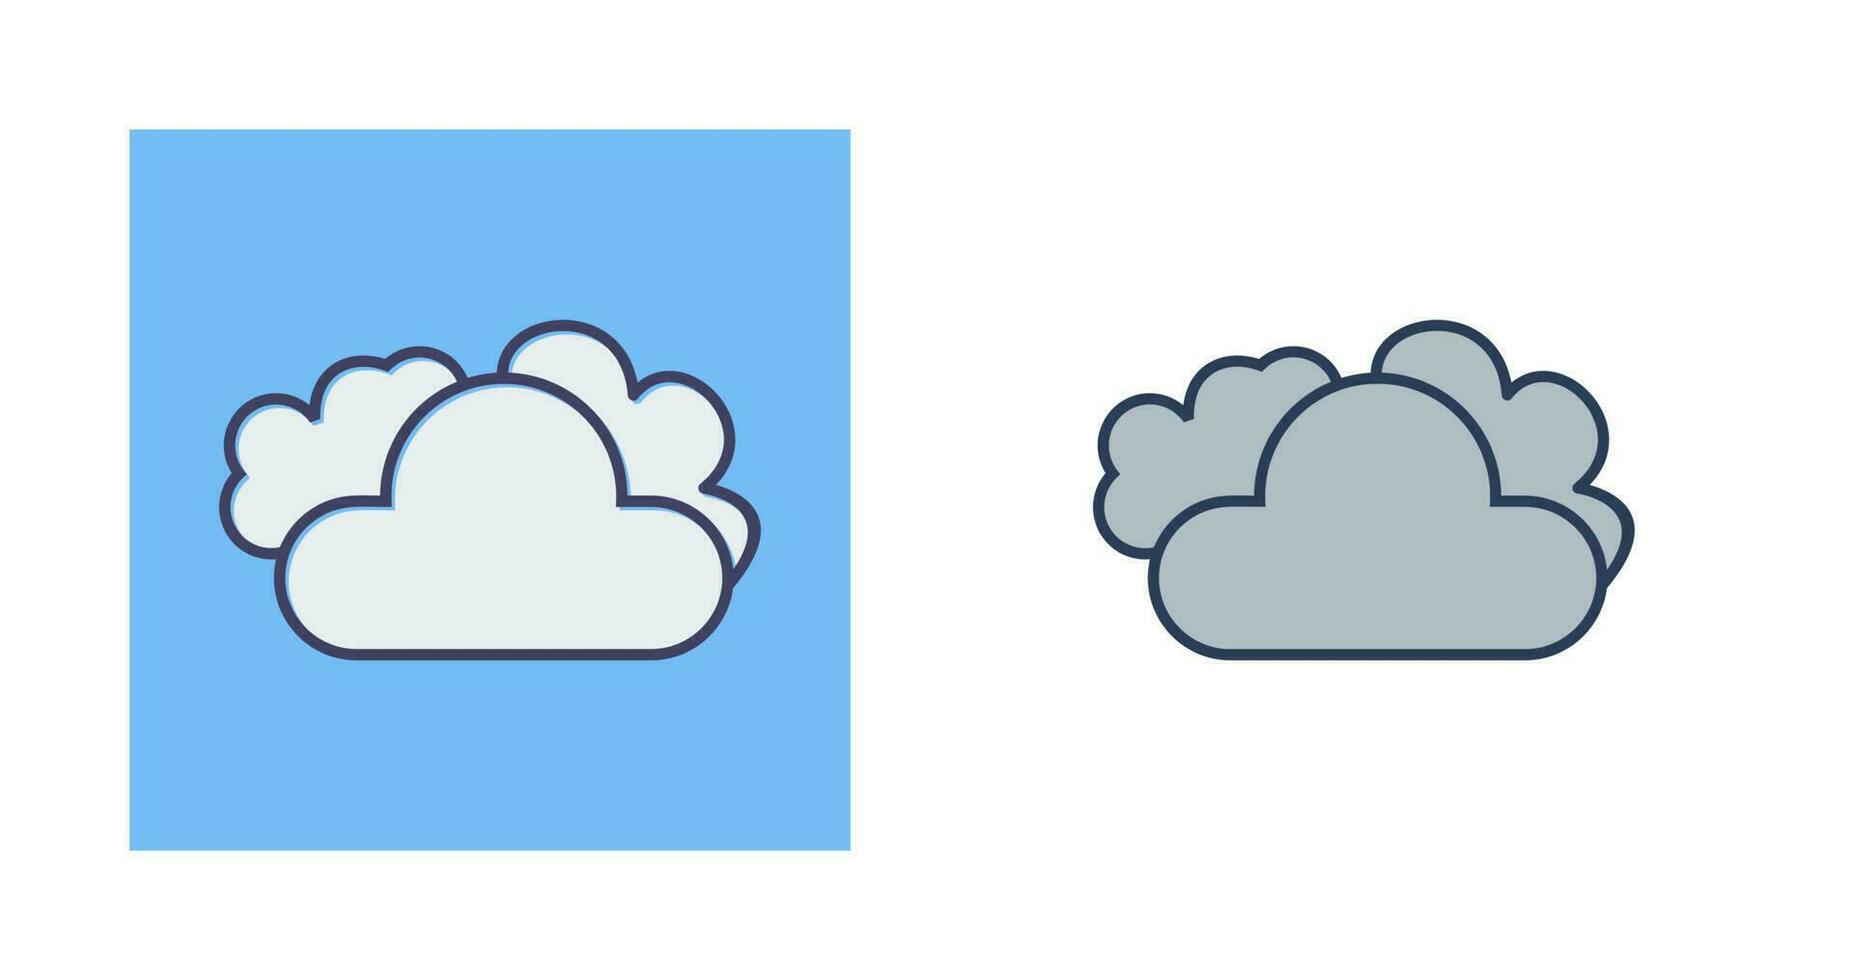 molnig väder vektor ikon